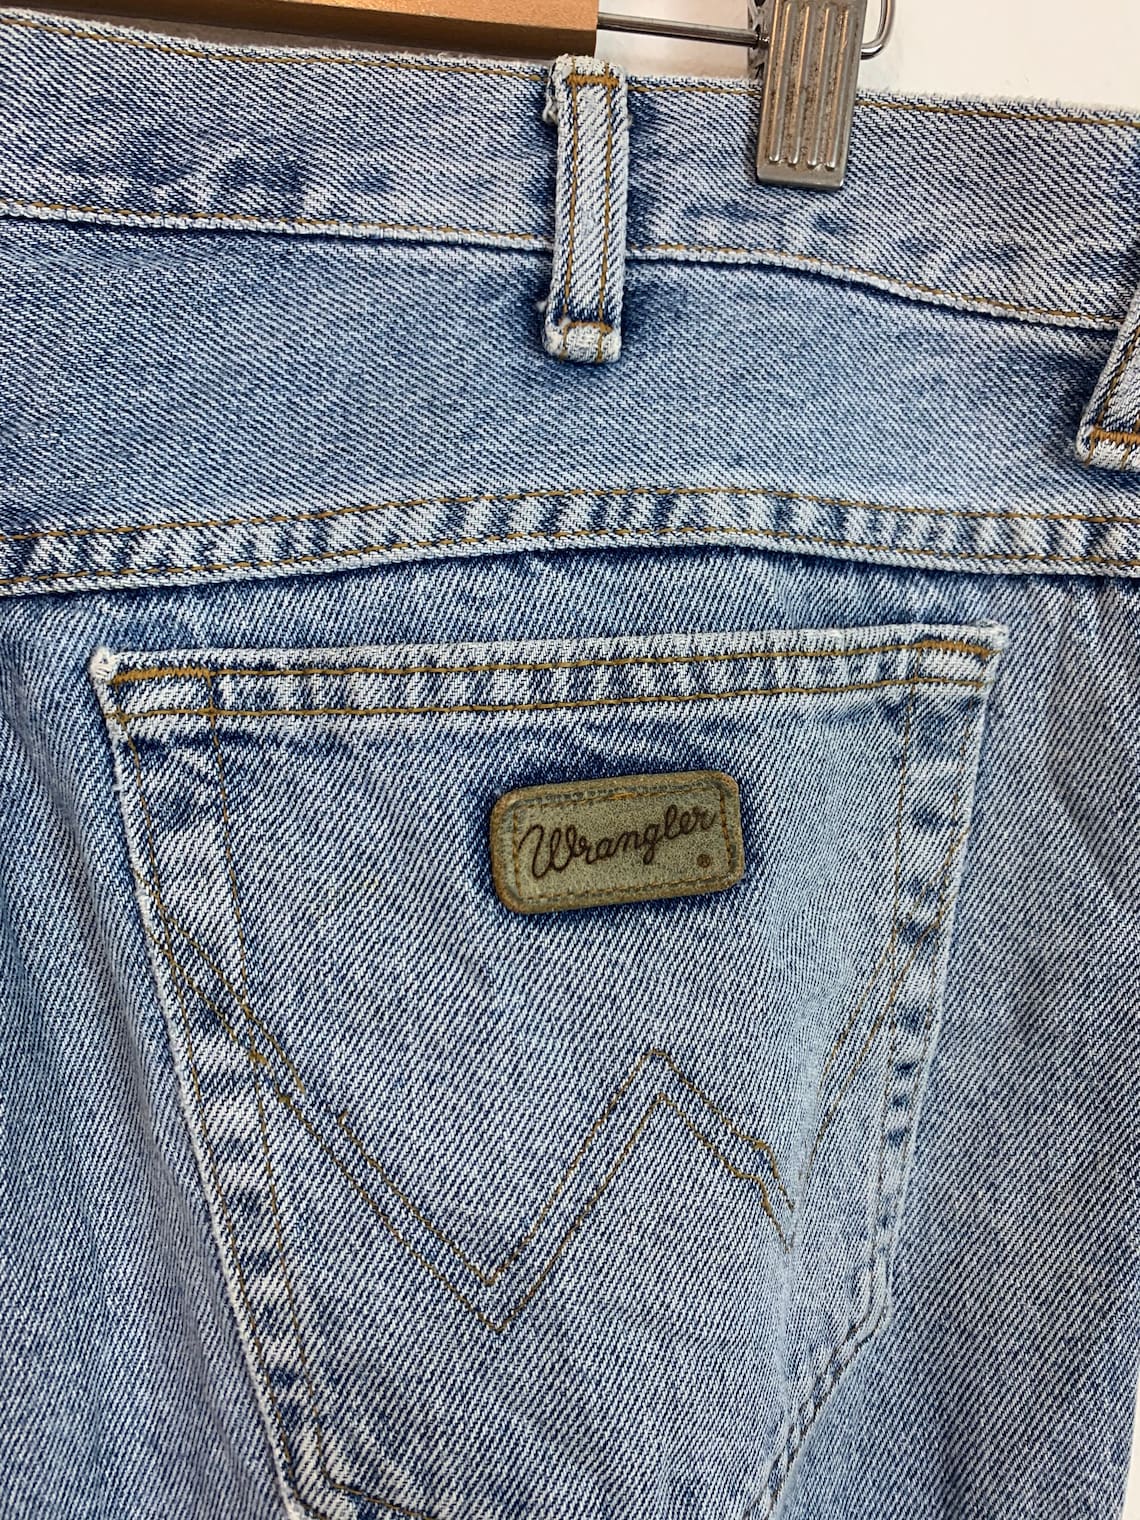 Vintage Wrangler Washed Denim Jeans Retro Light Blue 36 | Etsy